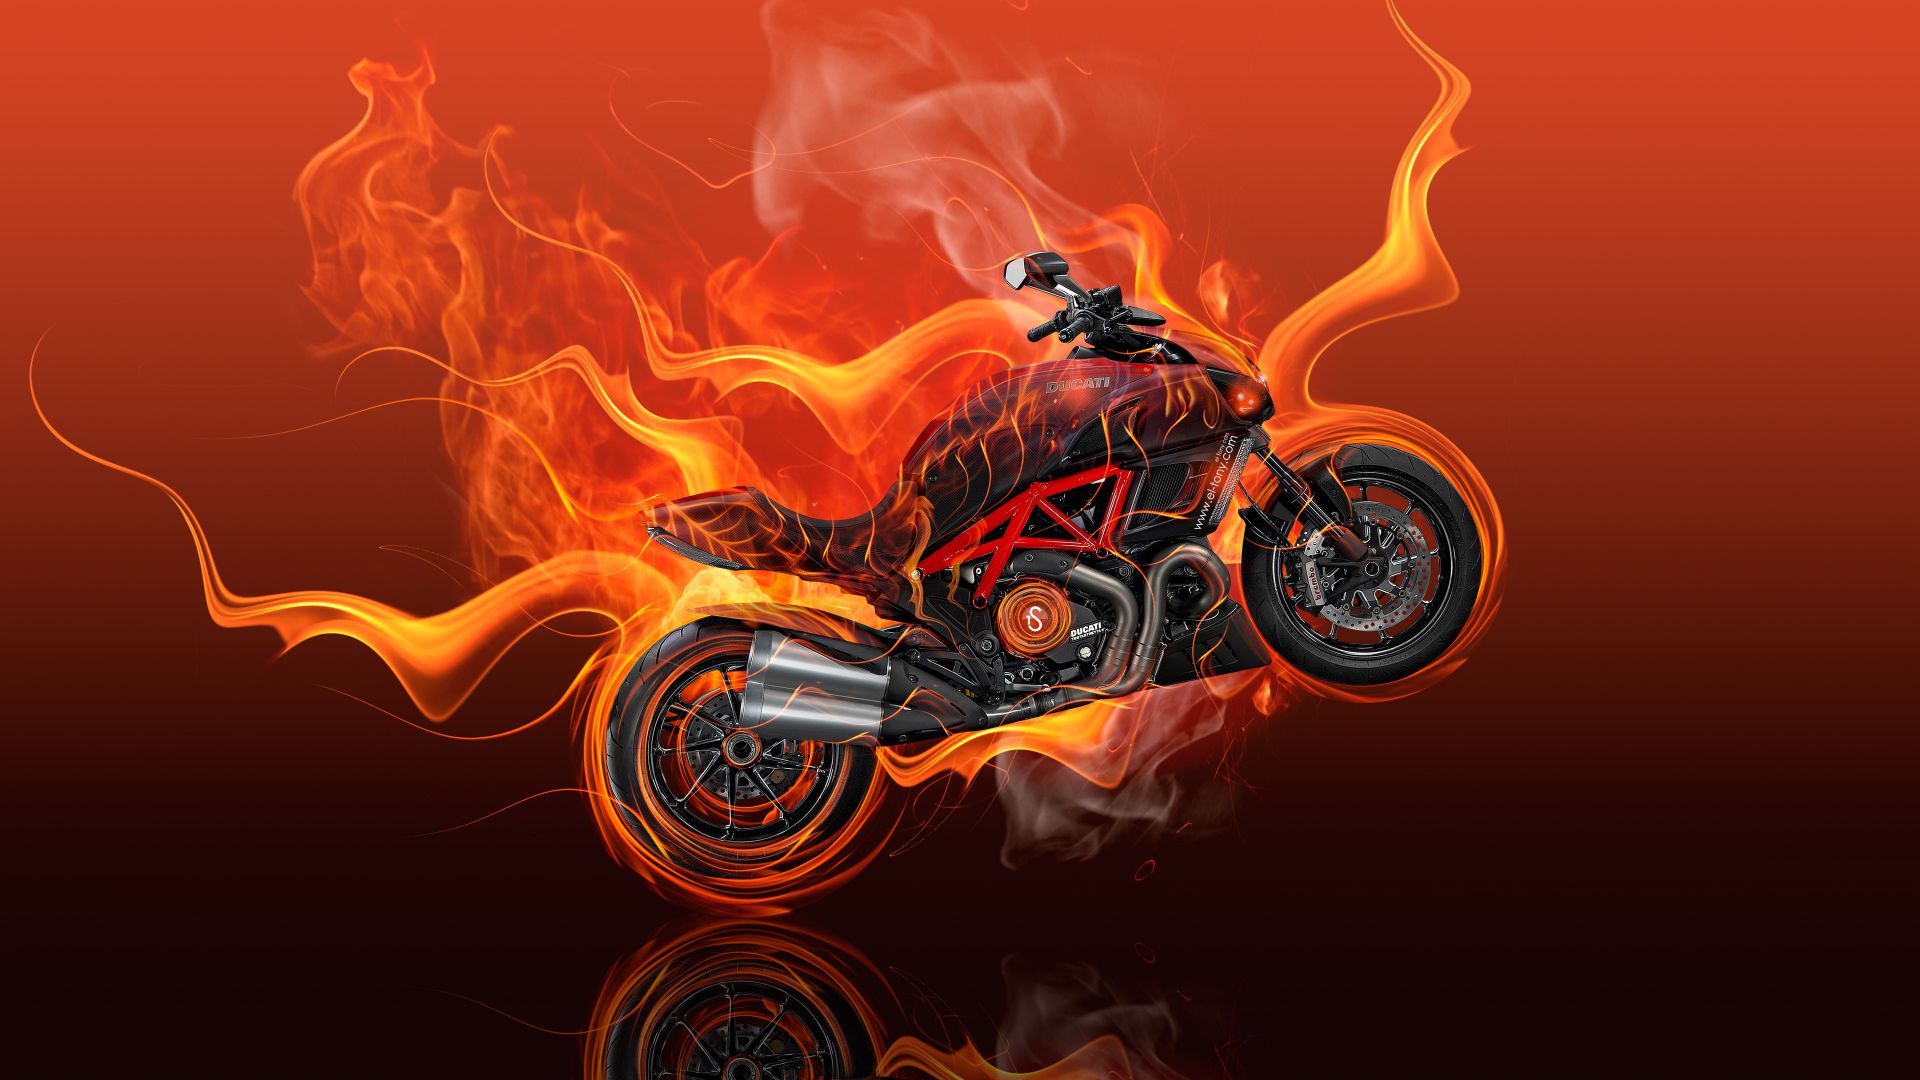 Wallpaper Moto Ducati diavel flame